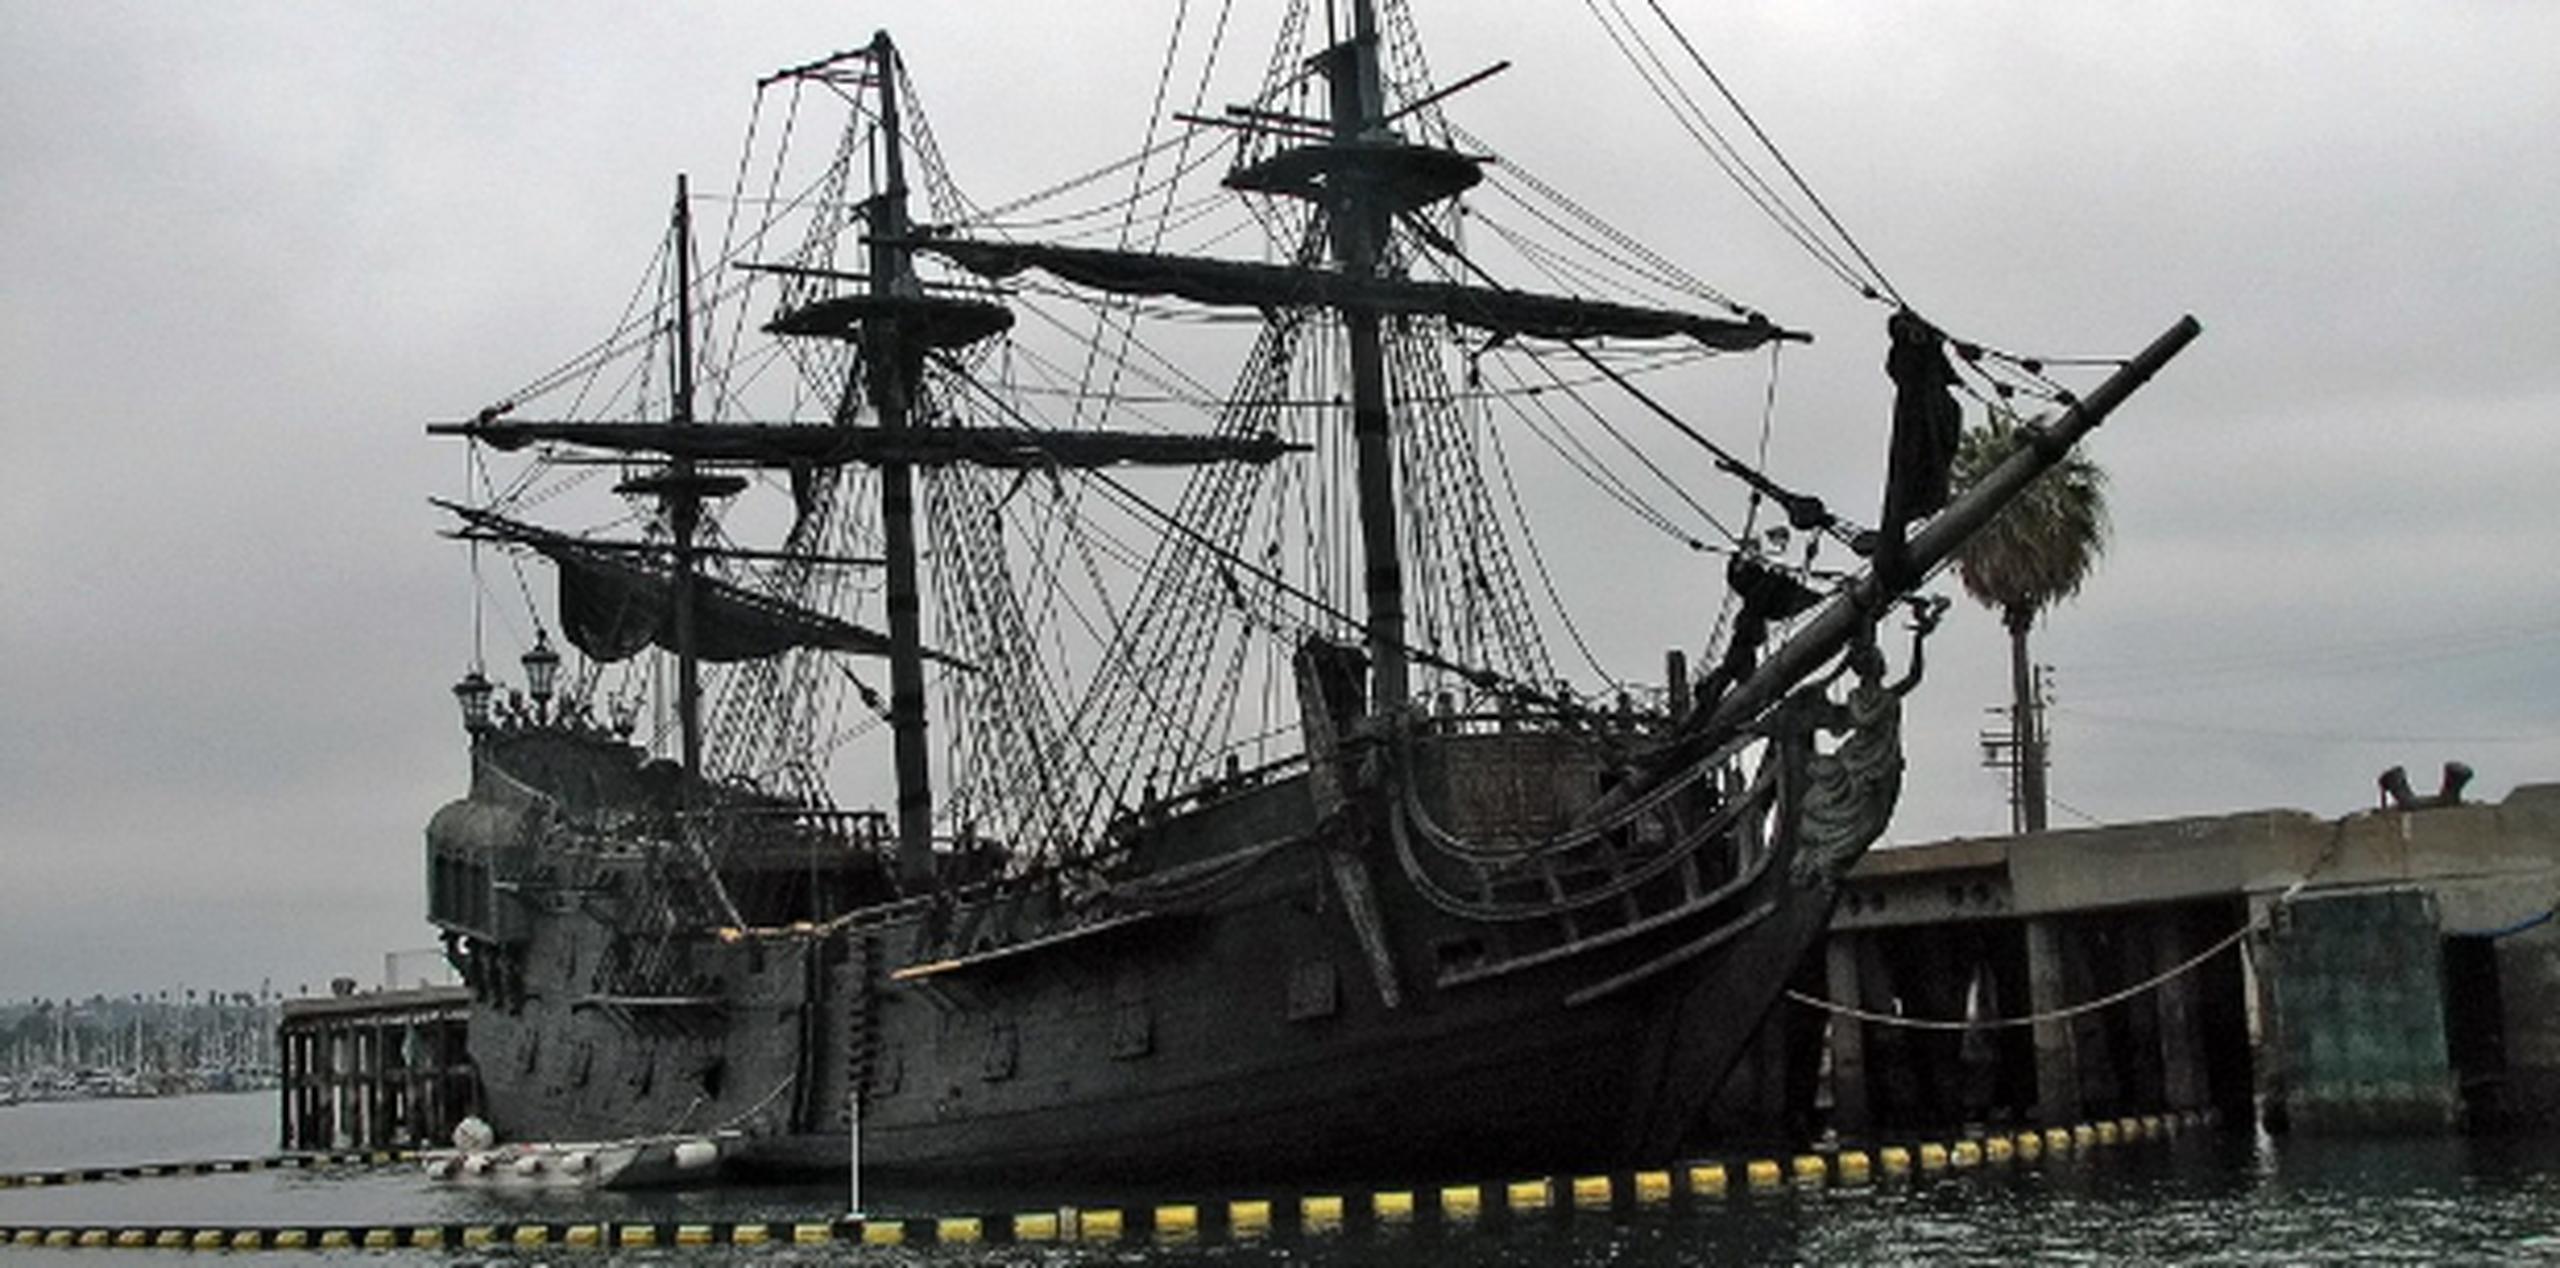 Las embarcaciones Black Pearl y Queen Anne’s Revenge llevan tiempo en Puerto del Rey.  (Archivo)